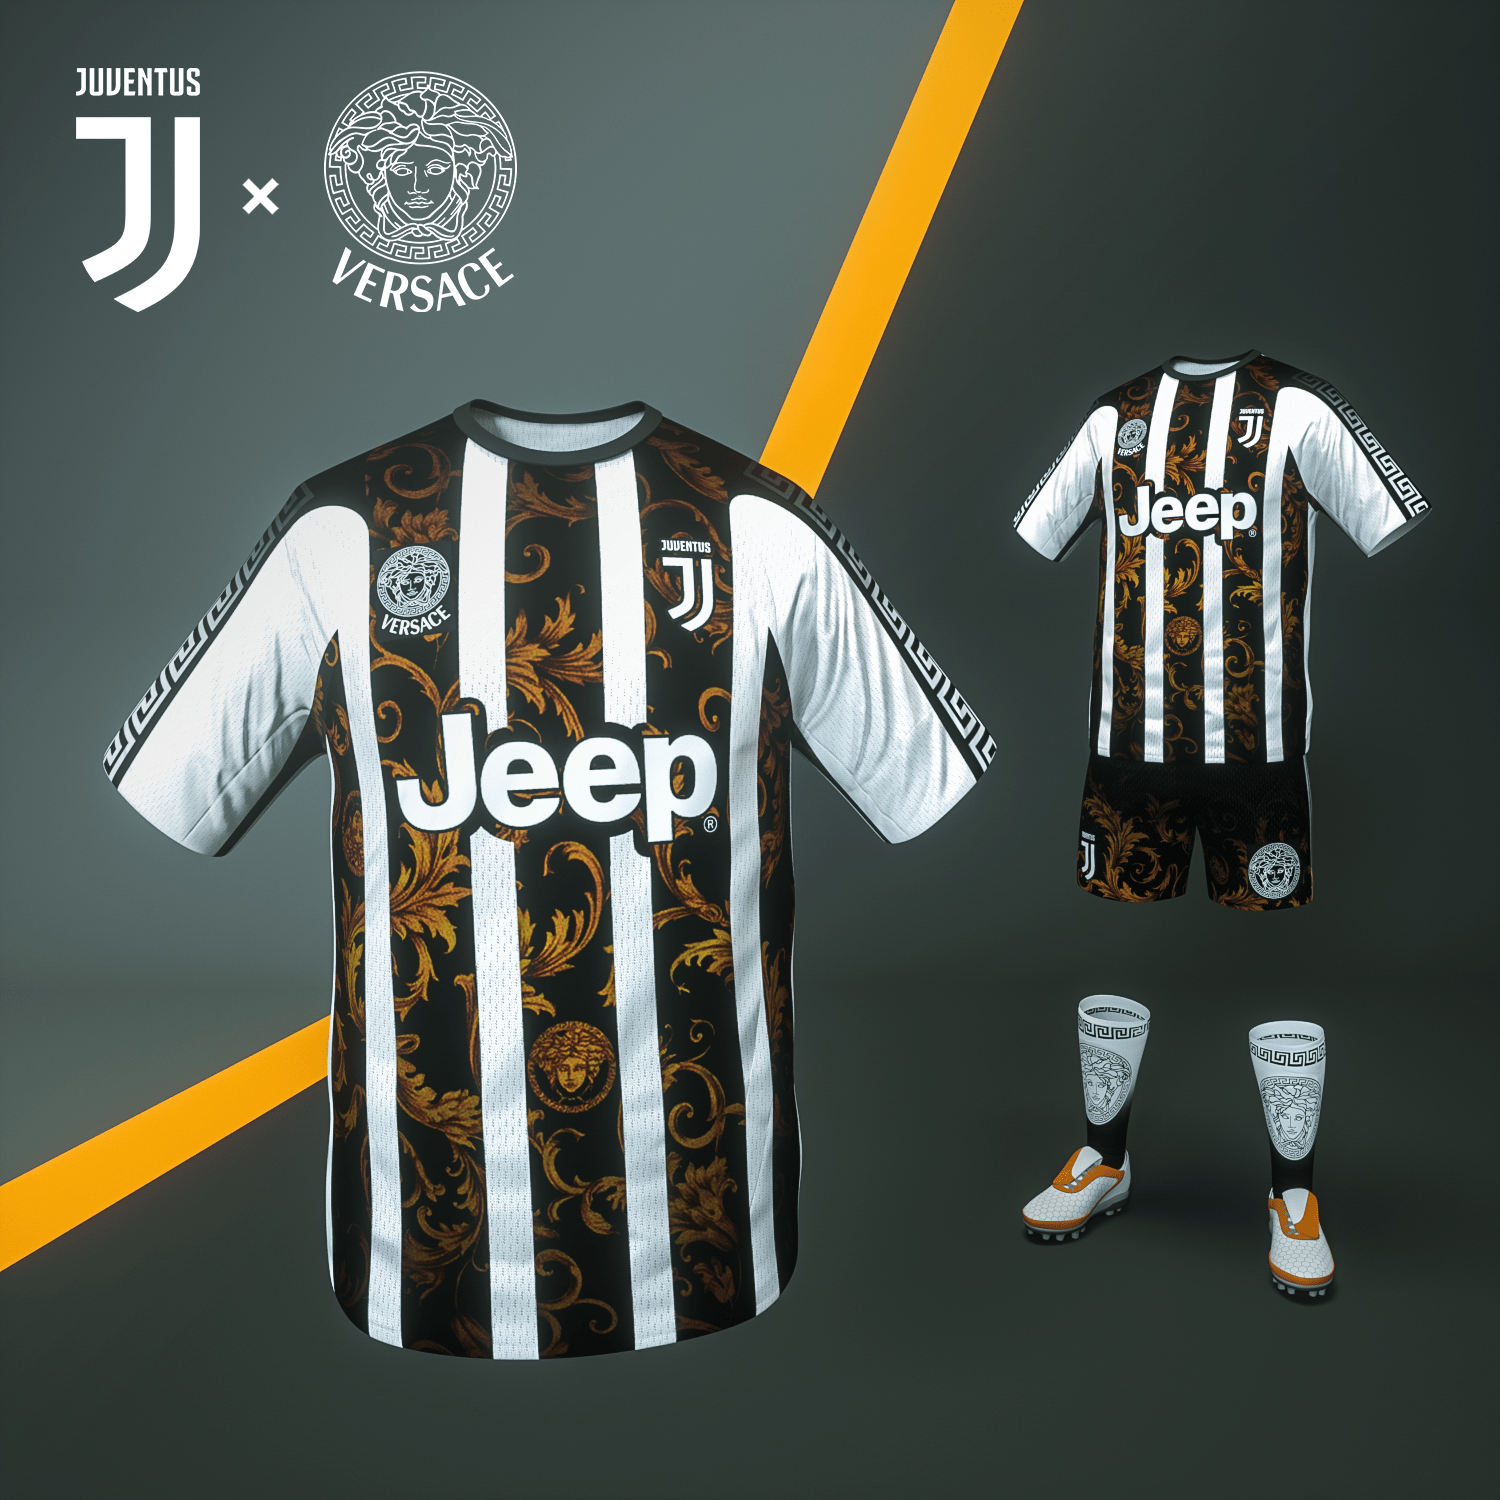 Juventus Turin X Versace